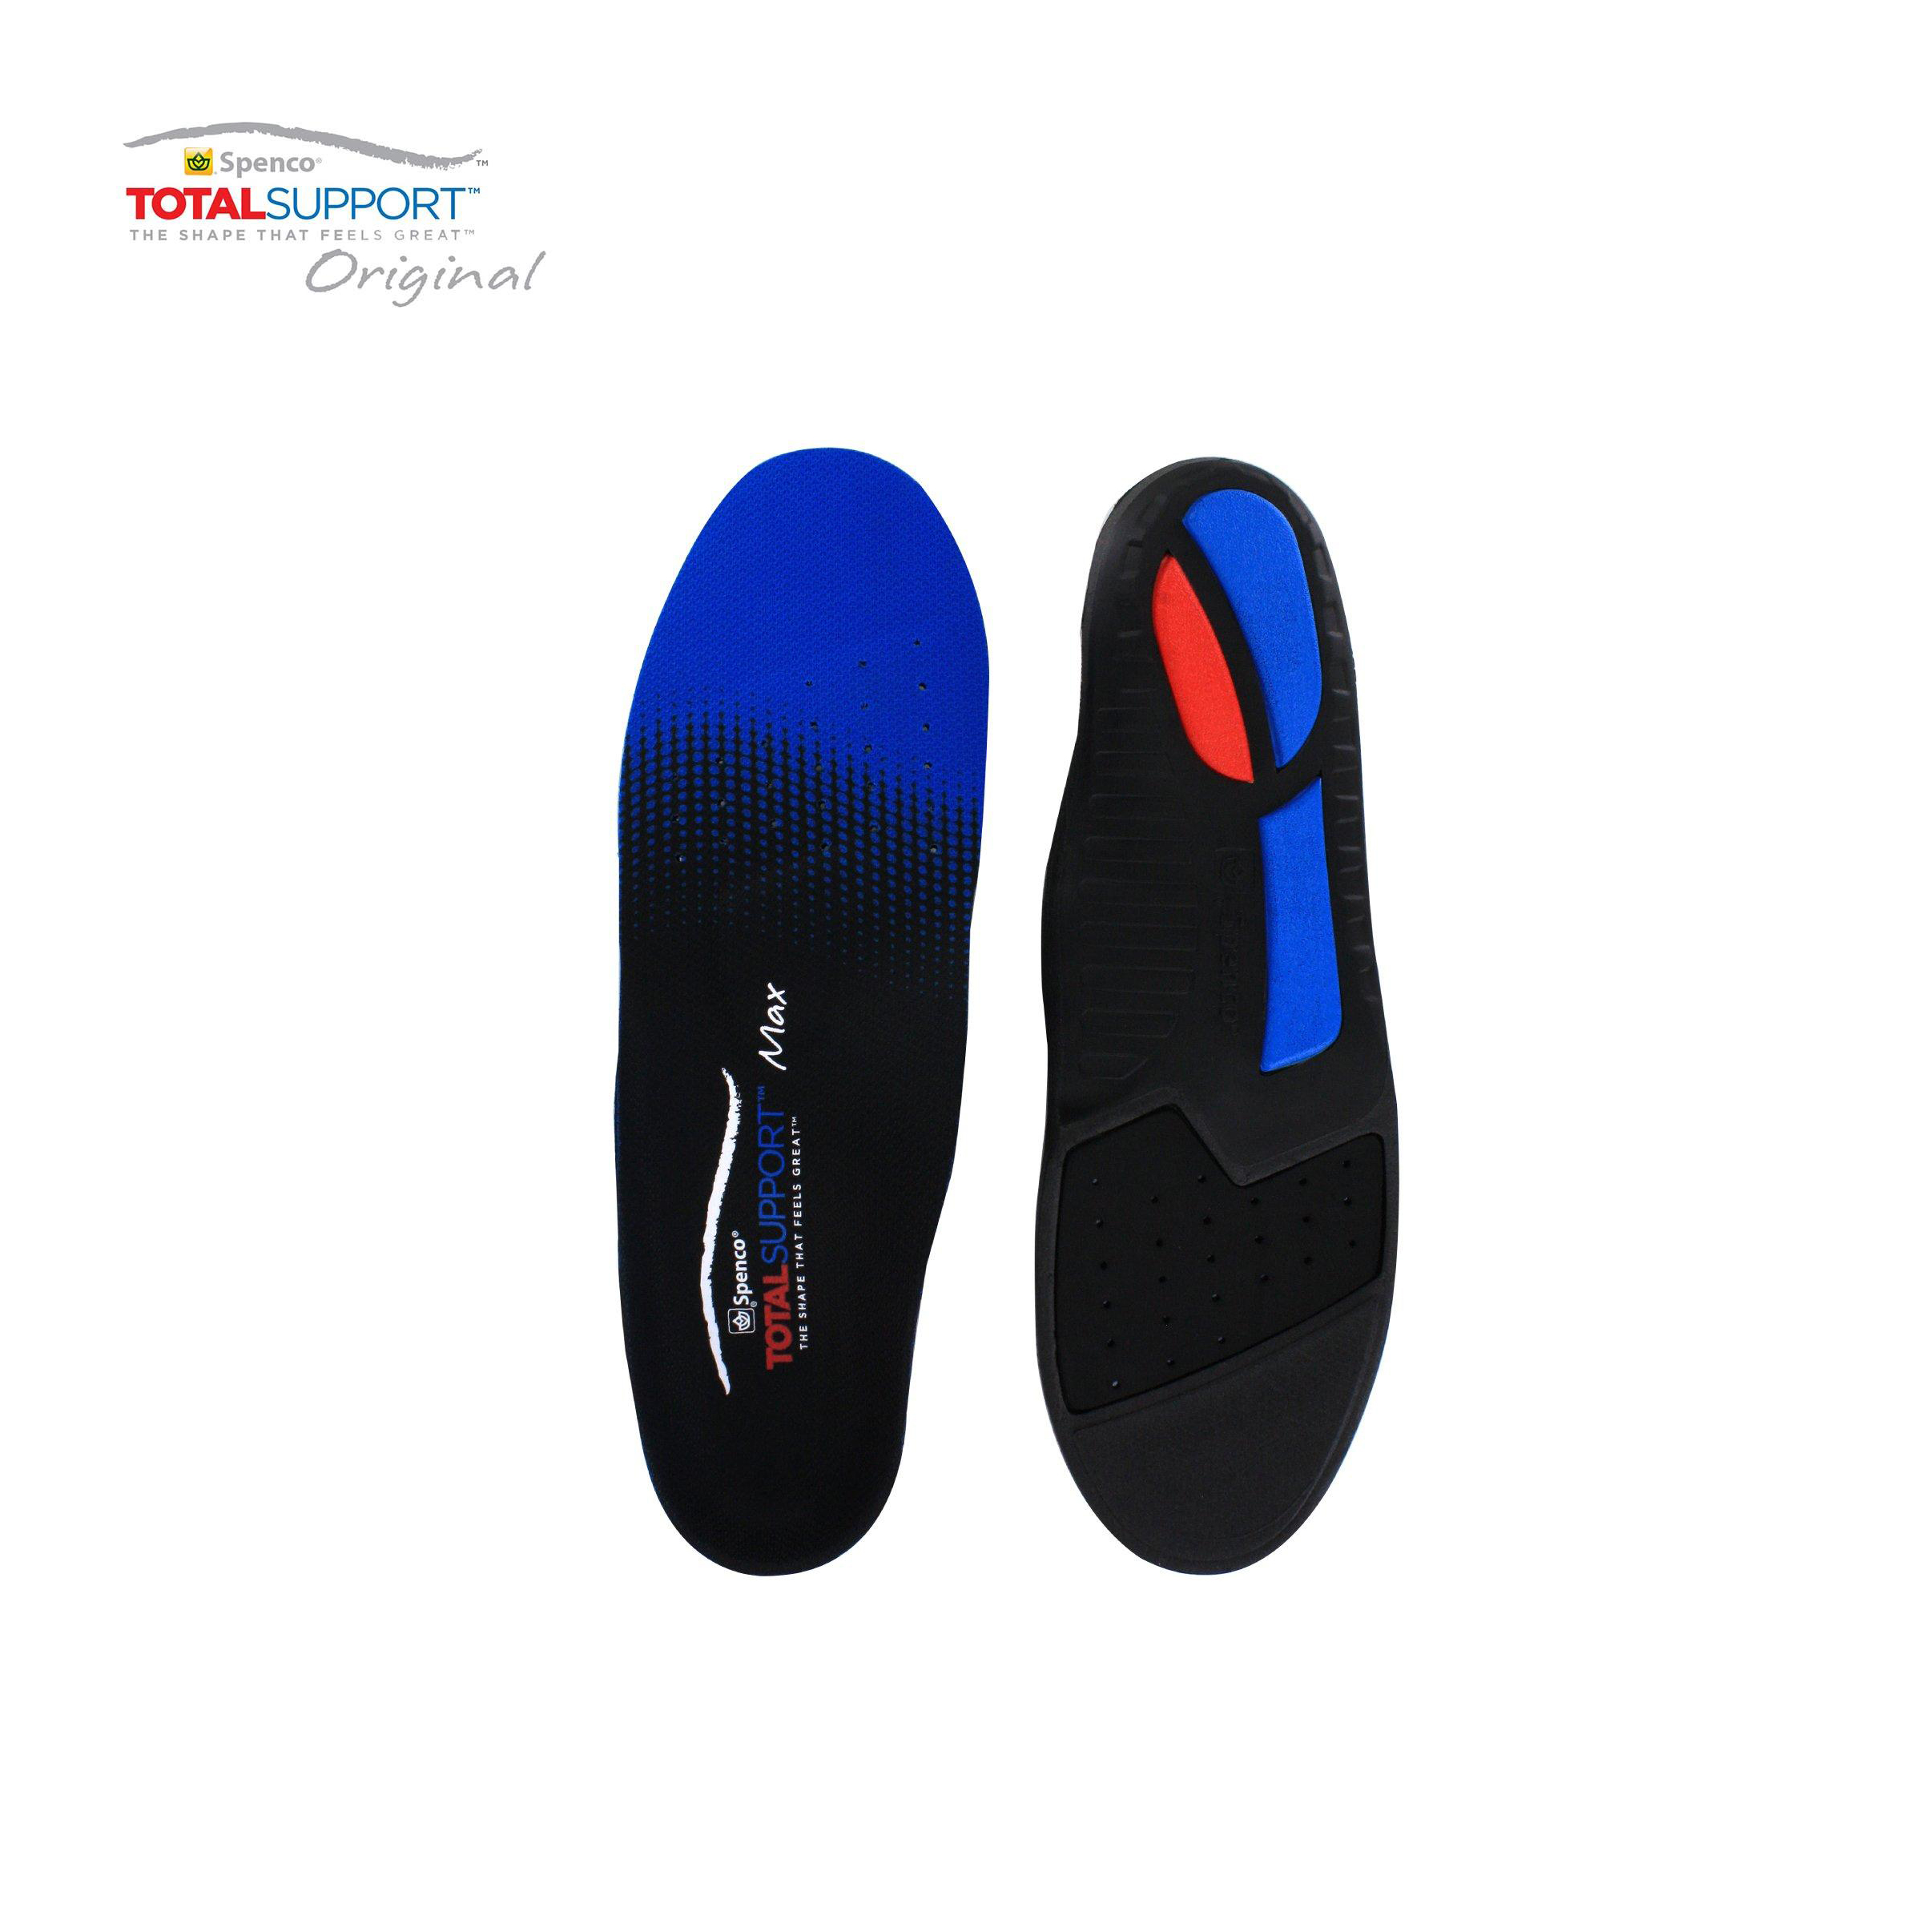 HCMLót giày hỗ trợ bàn chân bẹt Spenco Total Support Max 46-697